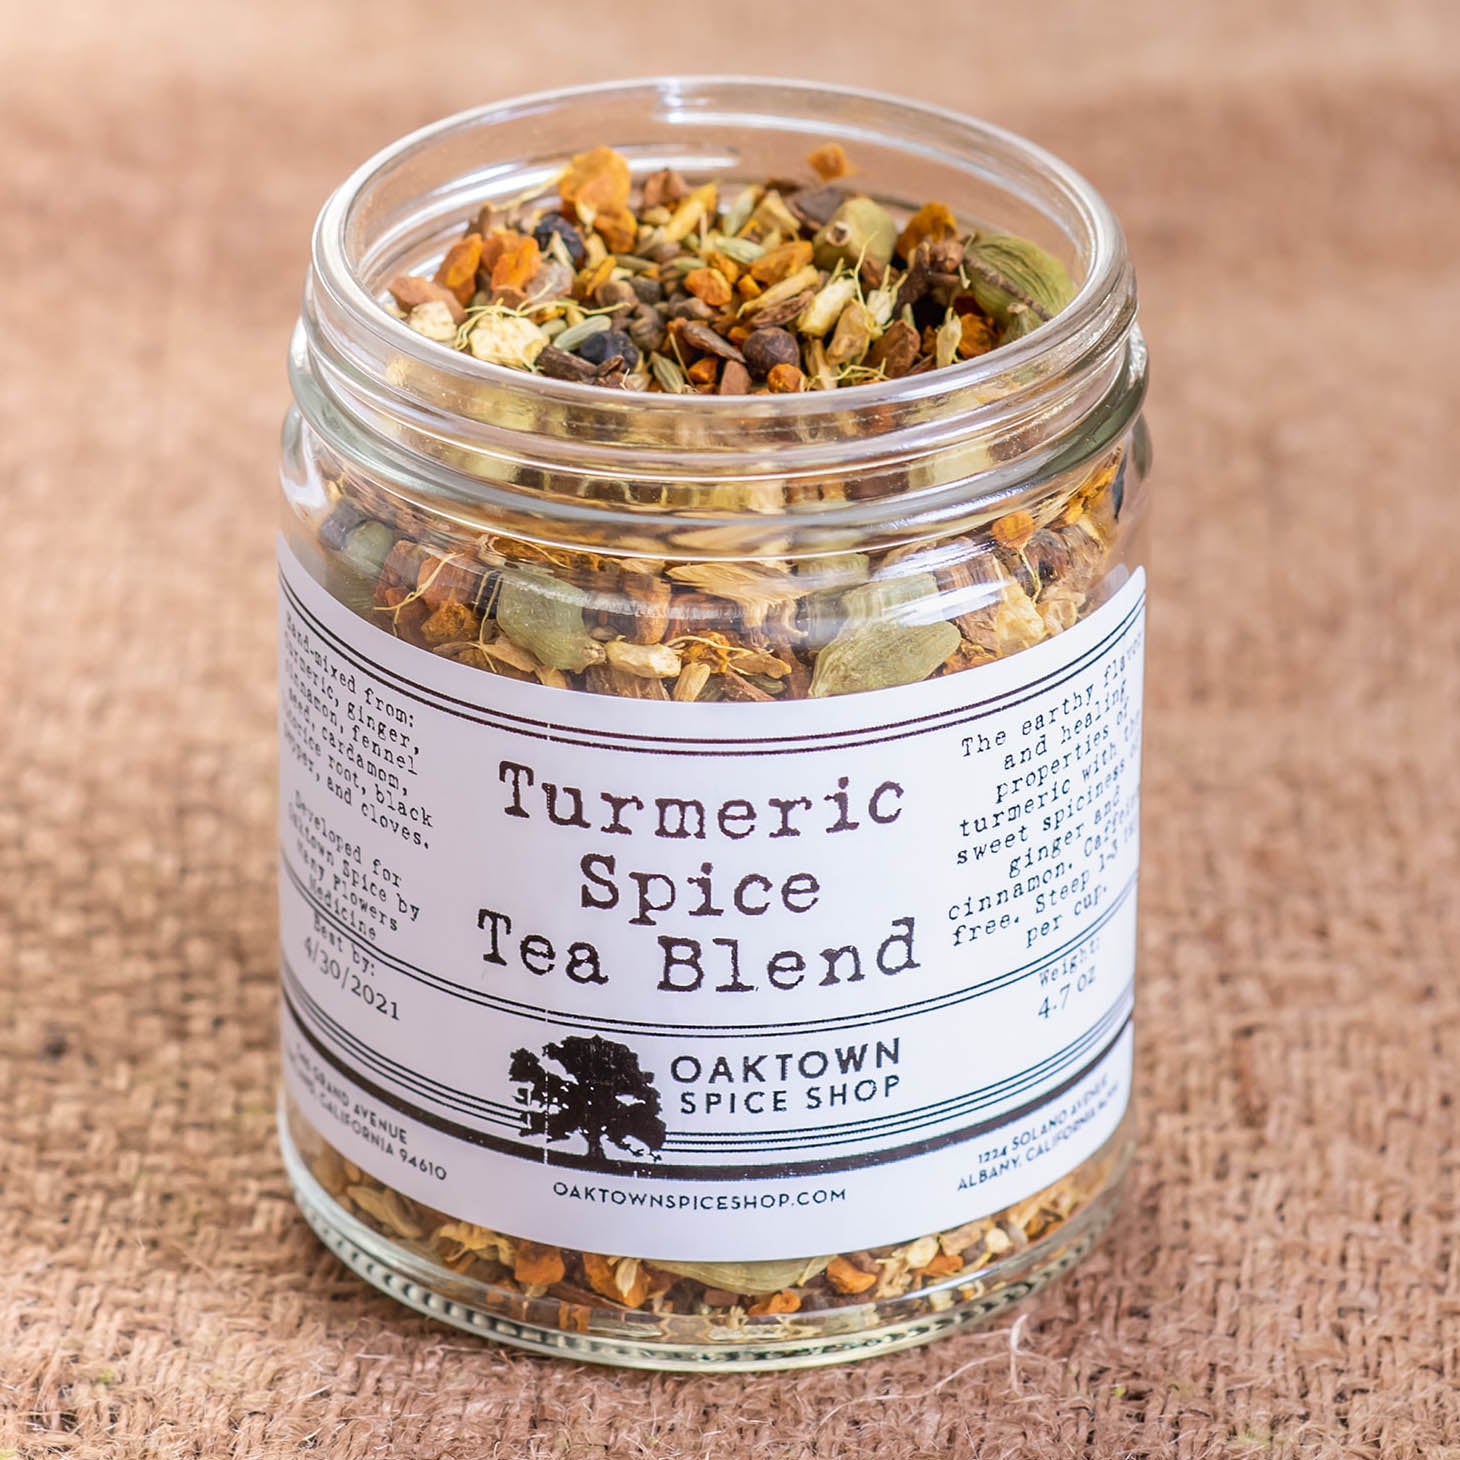 Turmeric Spice Tea Blend